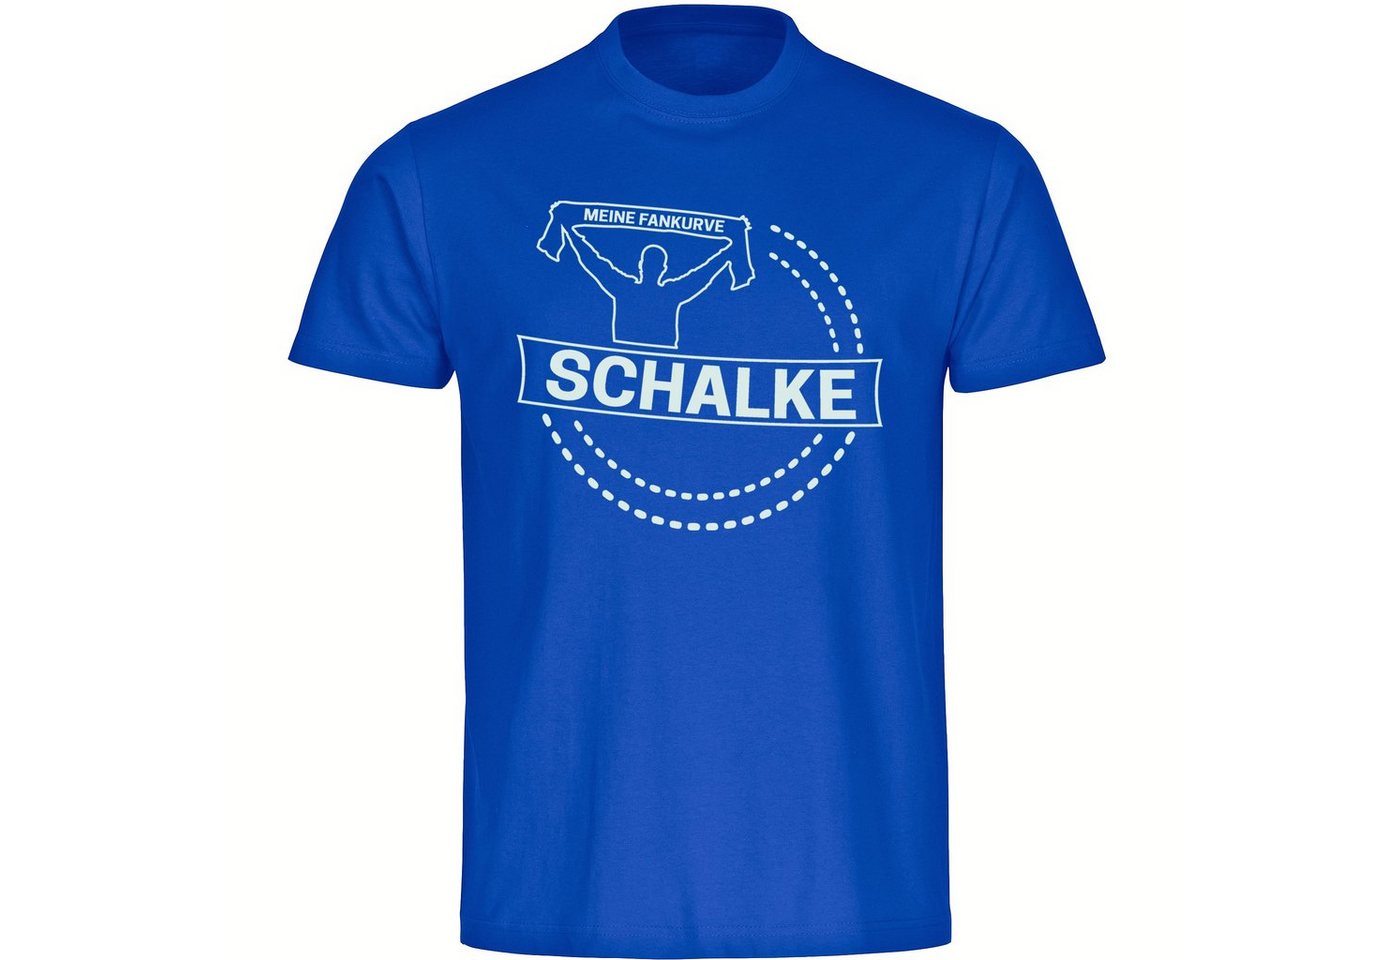 multifanshop T-Shirt Herren Schalke - Meine Fankurve - Männer von multifanshop